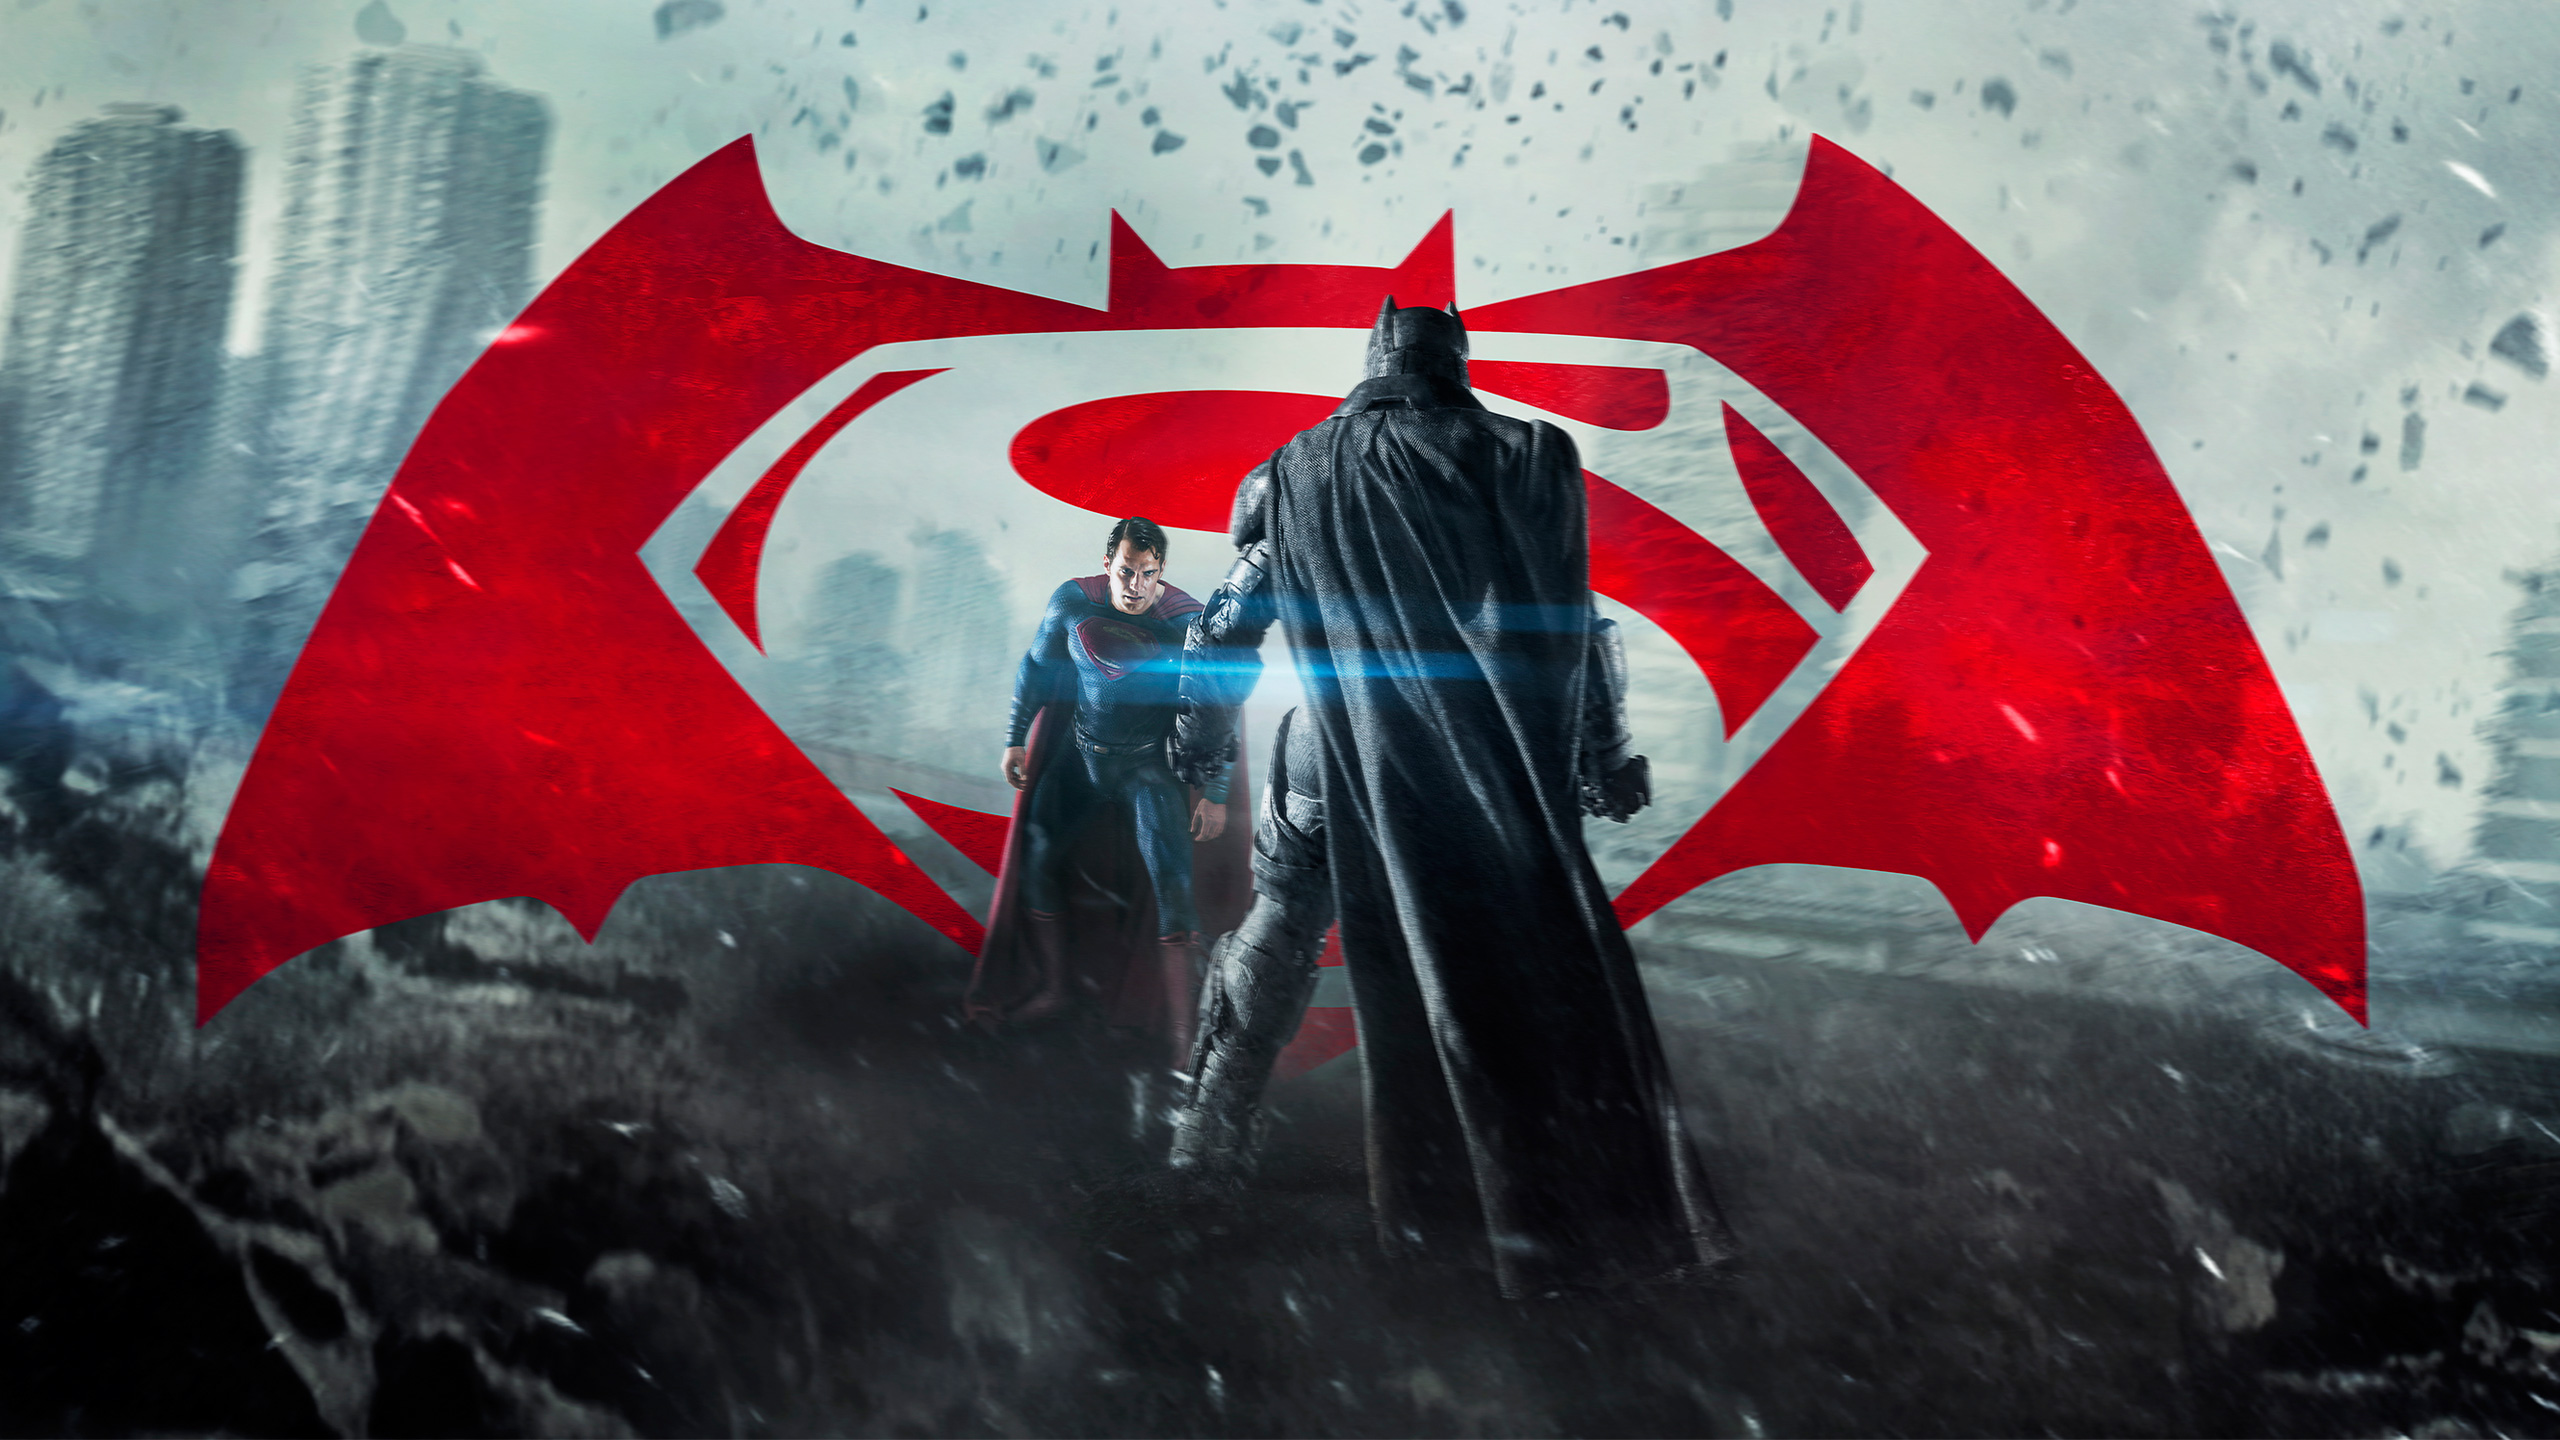 Batman V Superman Dawn Of Justice Wallpaper